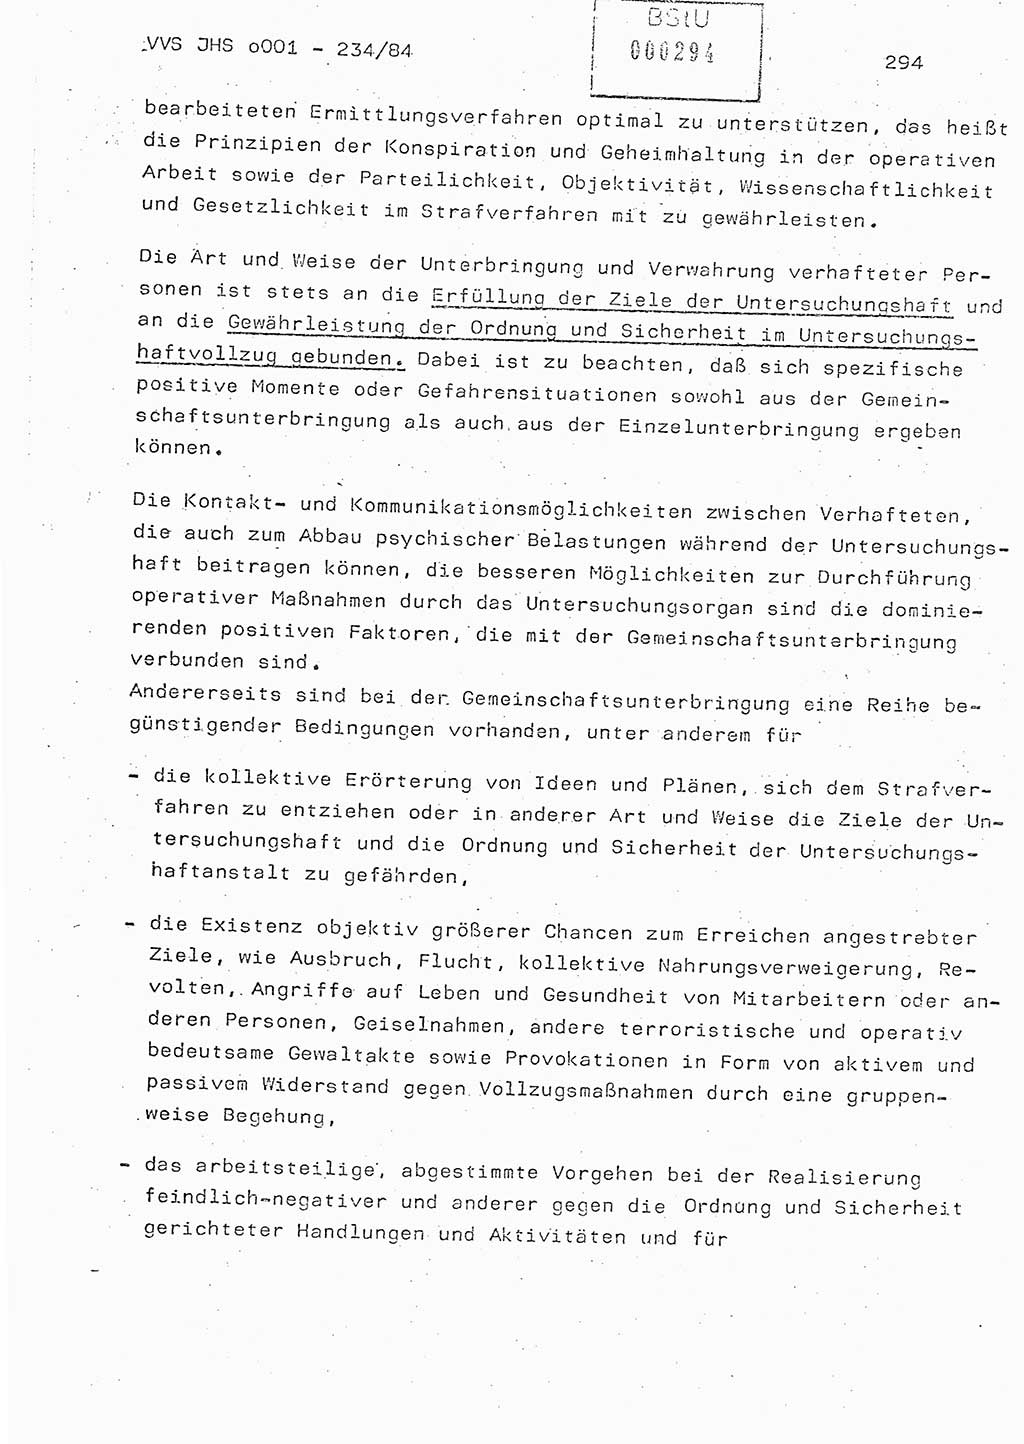 Dissertation Oberst Siegfried Rataizick (Abt. ⅩⅣ), Oberstleutnant Volkmar Heinz (Abt. ⅩⅣ), Oberstleutnant Werner Stein (HA Ⅸ), Hauptmann Heinz Conrad (JHS), Ministerium für Staatssicherheit (MfS) [Deutsche Demokratische Republik (DDR)], Juristische Hochschule (JHS), Vertrauliche Verschlußsache (VVS) o001-234/84, Potsdam 1984, Seite 294 (Diss. MfS DDR JHS VVS o001-234/84 1984, S. 294)